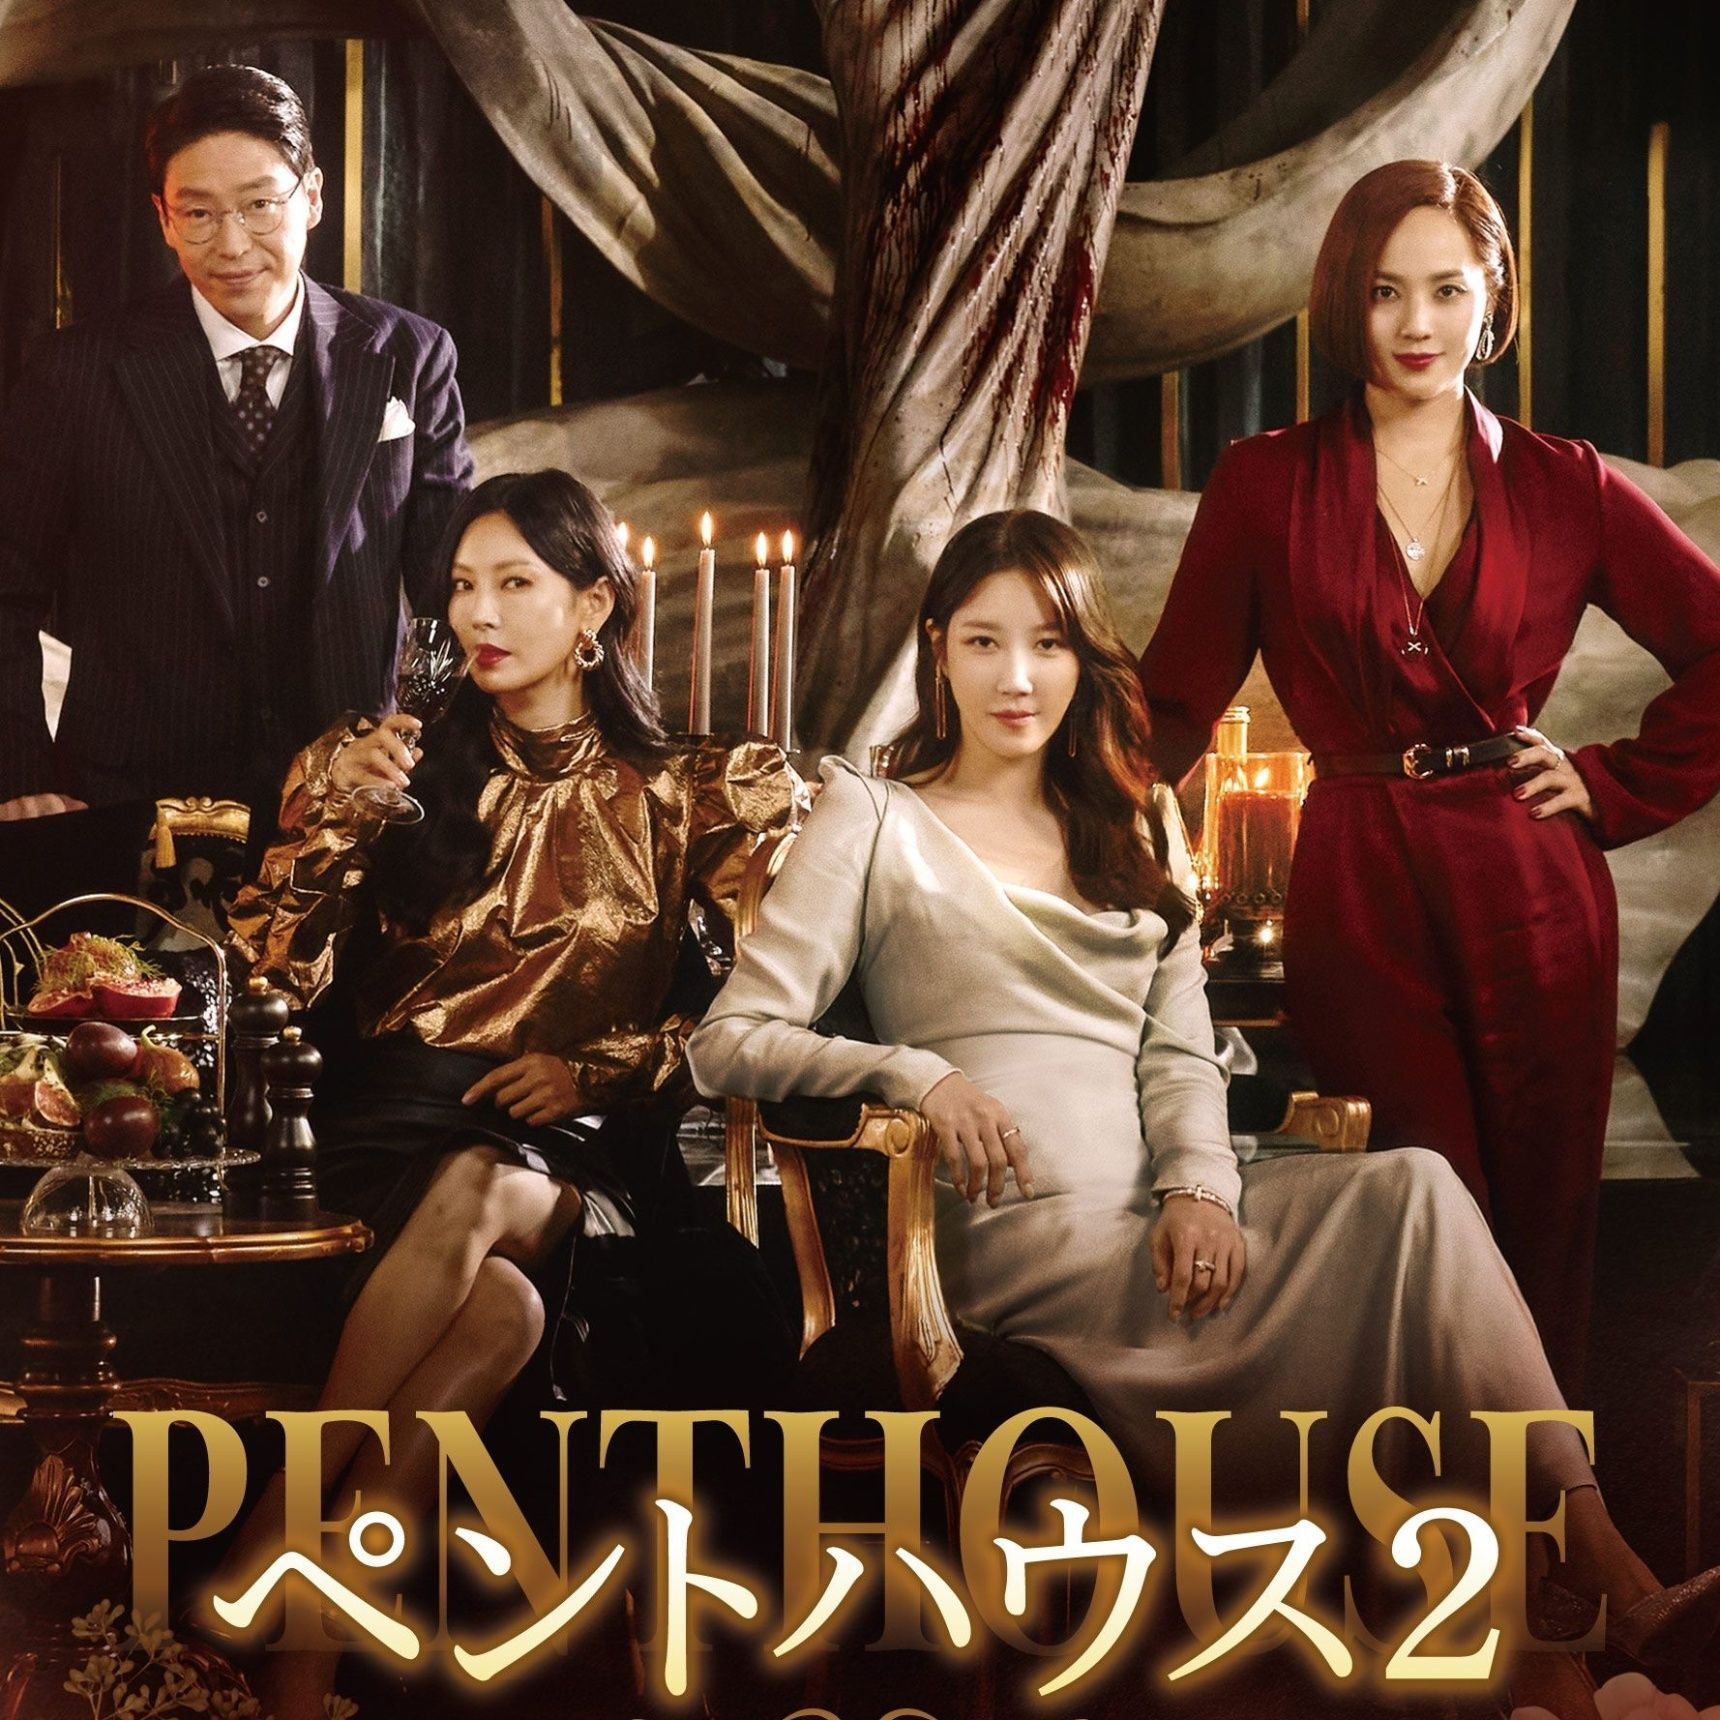 「ペントハウス」は「2020 SBS演技大賞」最多9冠受賞した話題のドラマなんだって！